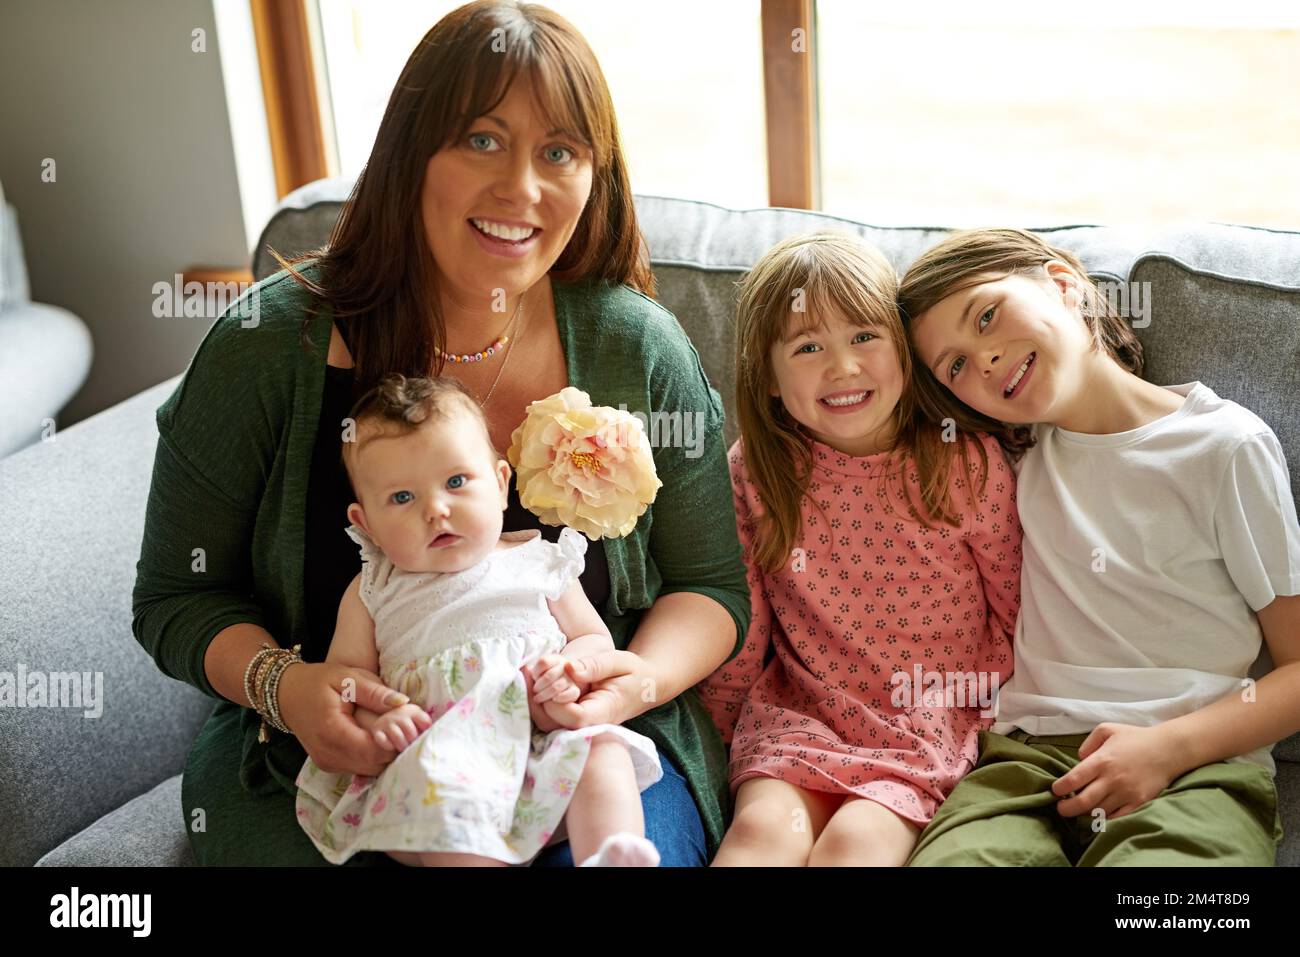 Eine große, gesegnete Familie. Porträt einer Mutter, die sich mit ihren drei kleinen Kindern zu Hause anfreundet. Stockfoto